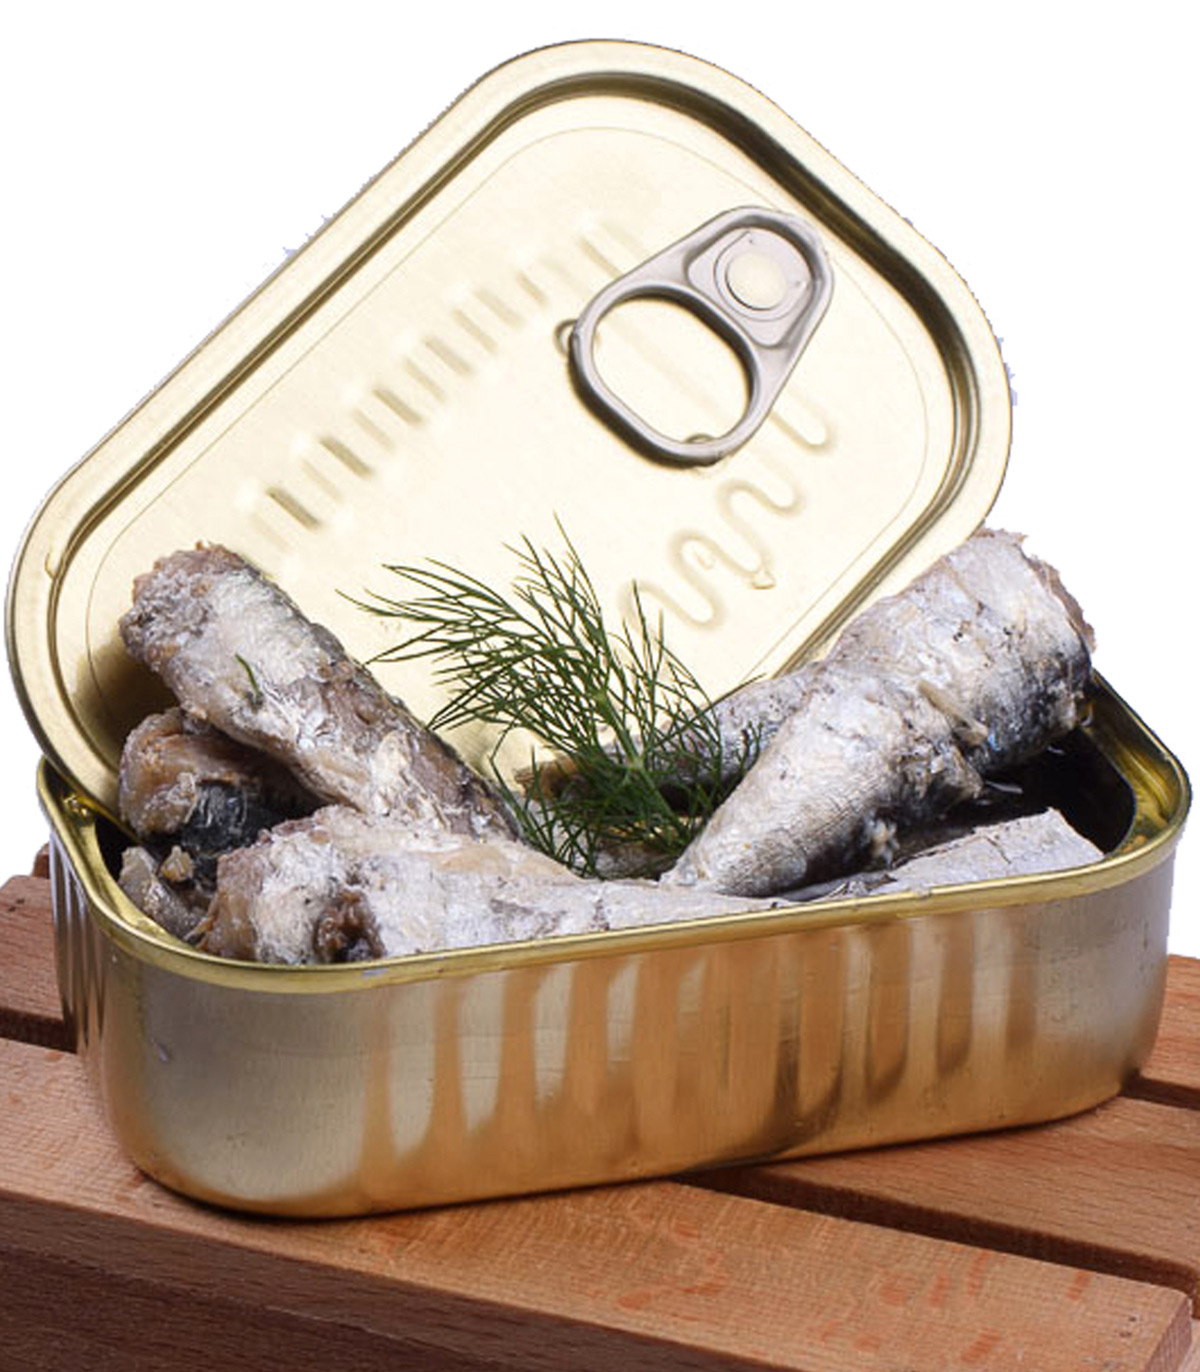 Boîte de sardines de petites tailles - Conserve artisanale La Chanca